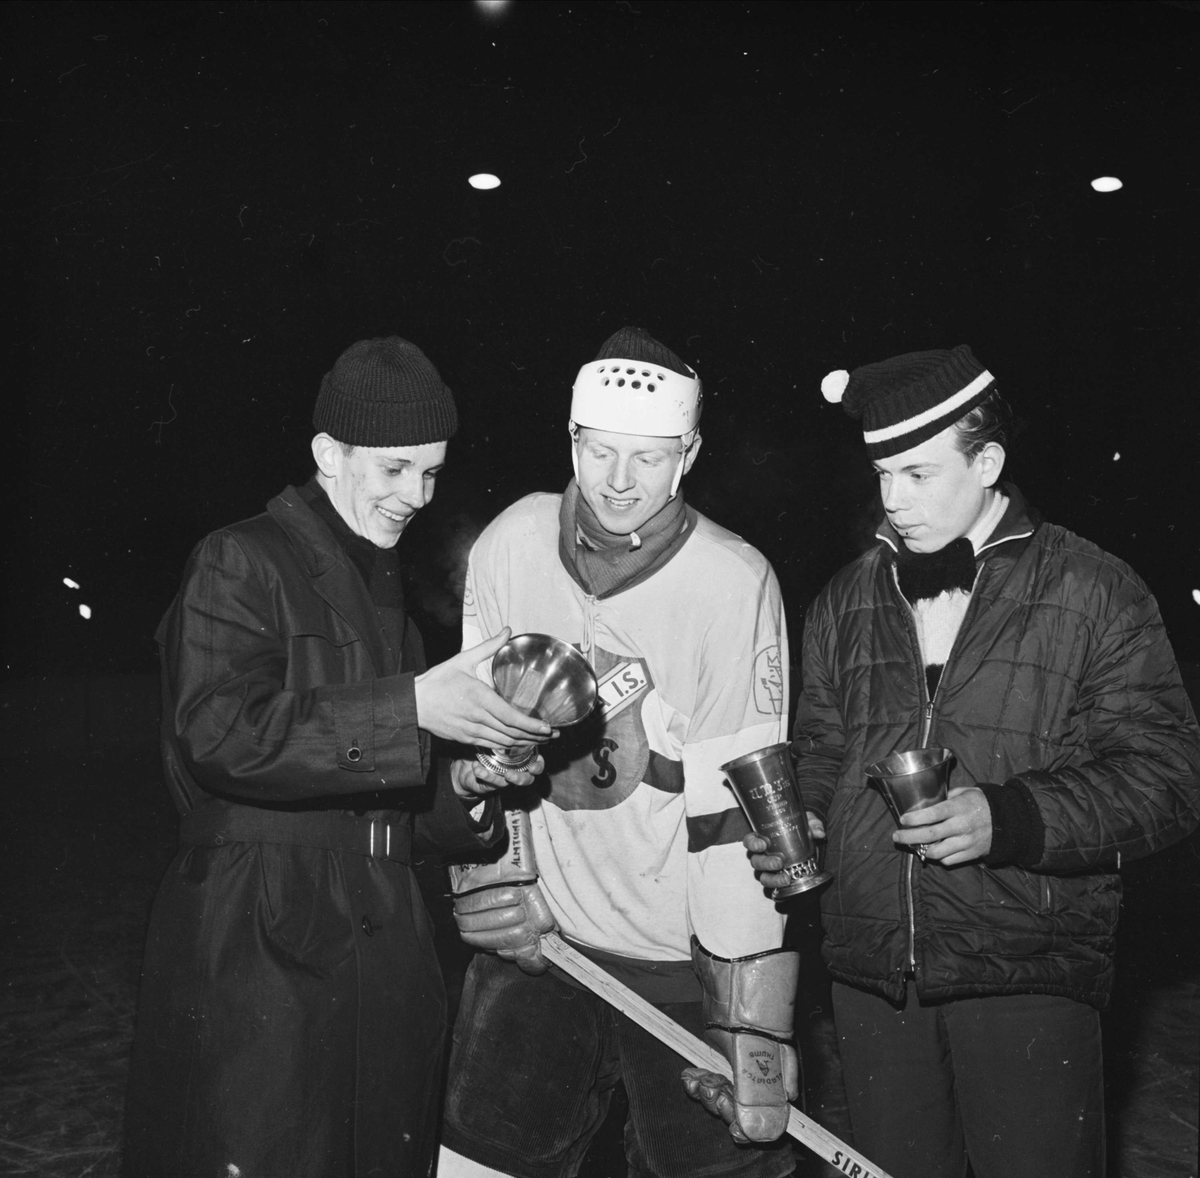 Ishockeyspelare från Almtuna IS med idrottspriser, Uppsala 1962